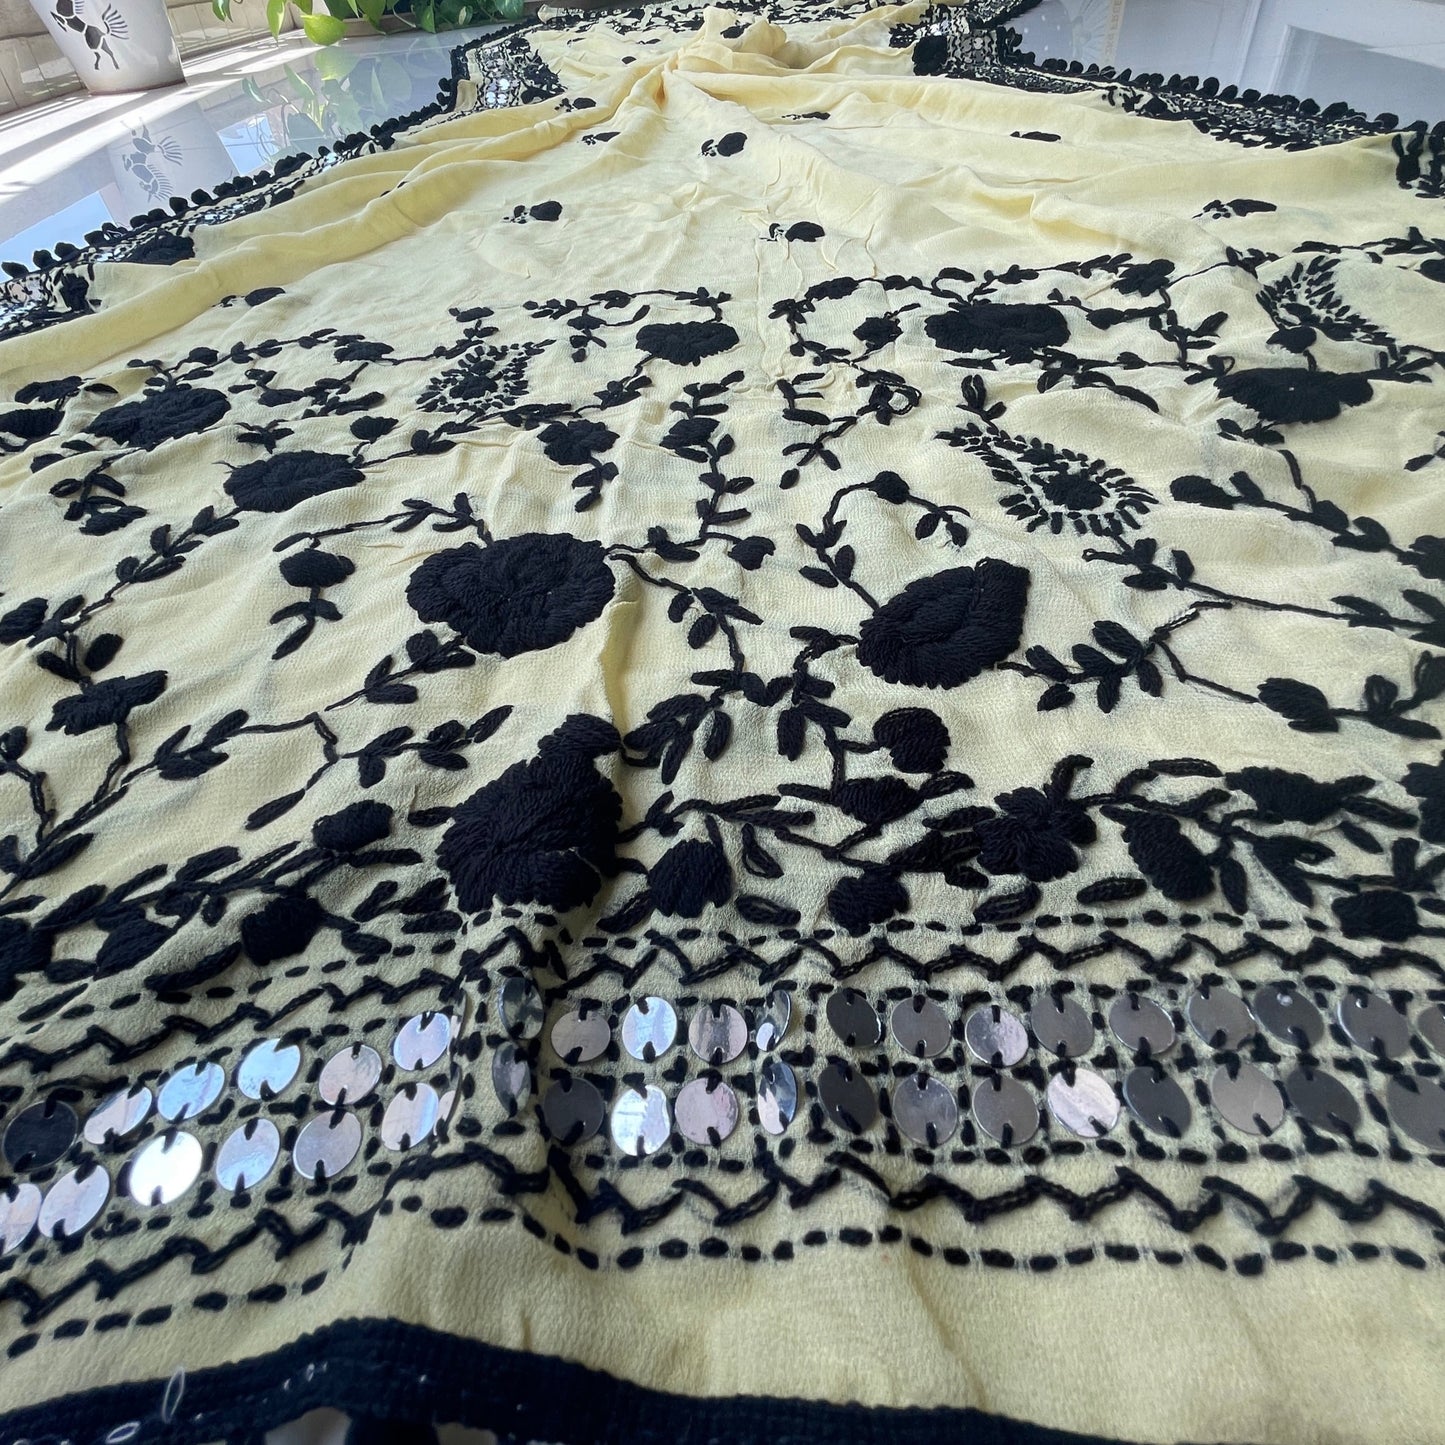 Chiffon Hand Embroidered Dupatta - Beige With Black Threadwork